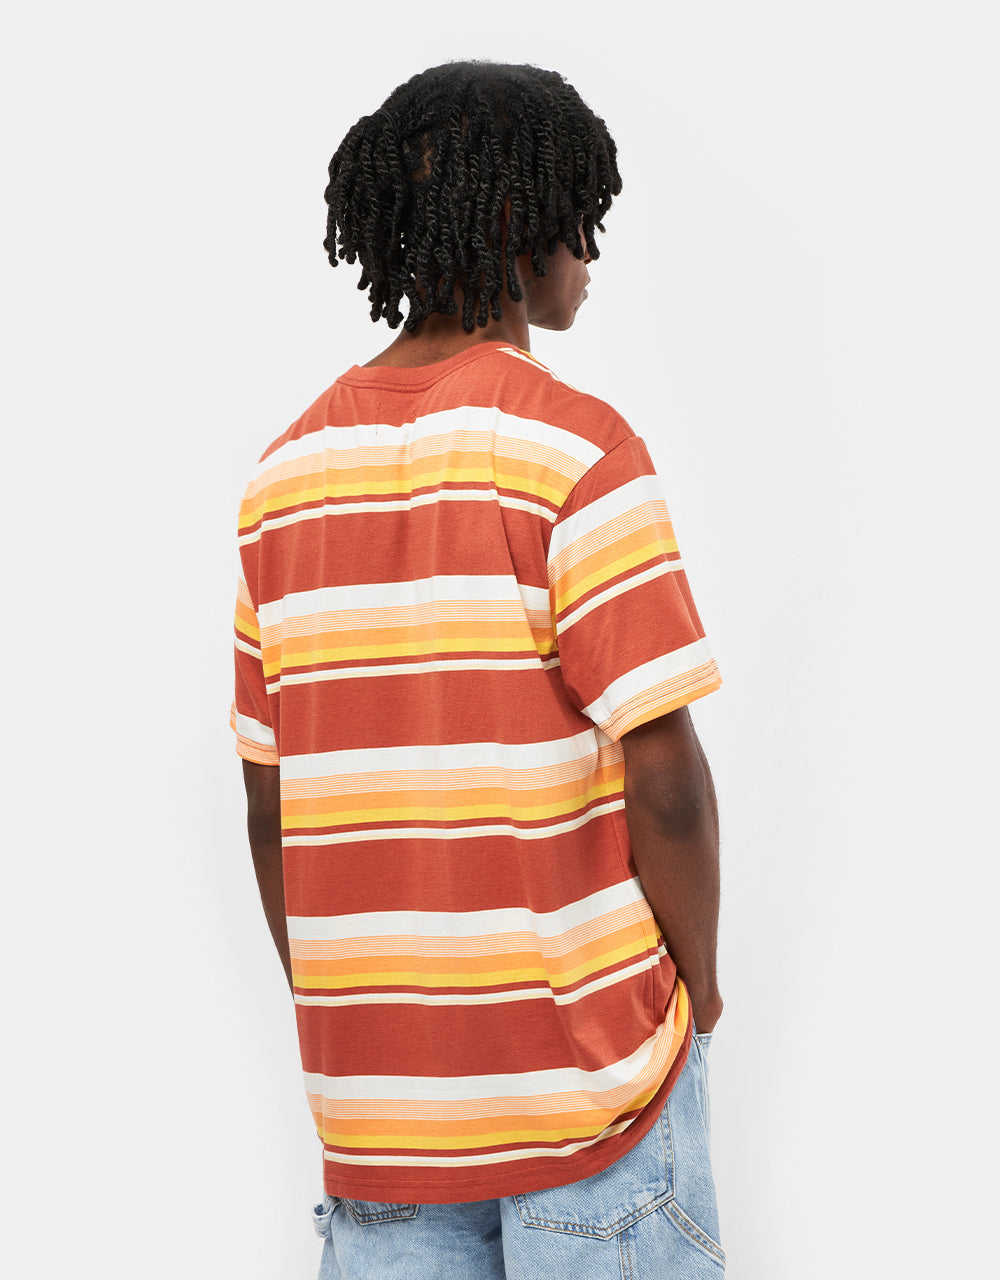 Brixton Hilt Stith Striped T-Shirt - Terracotta/Apricot/Off White